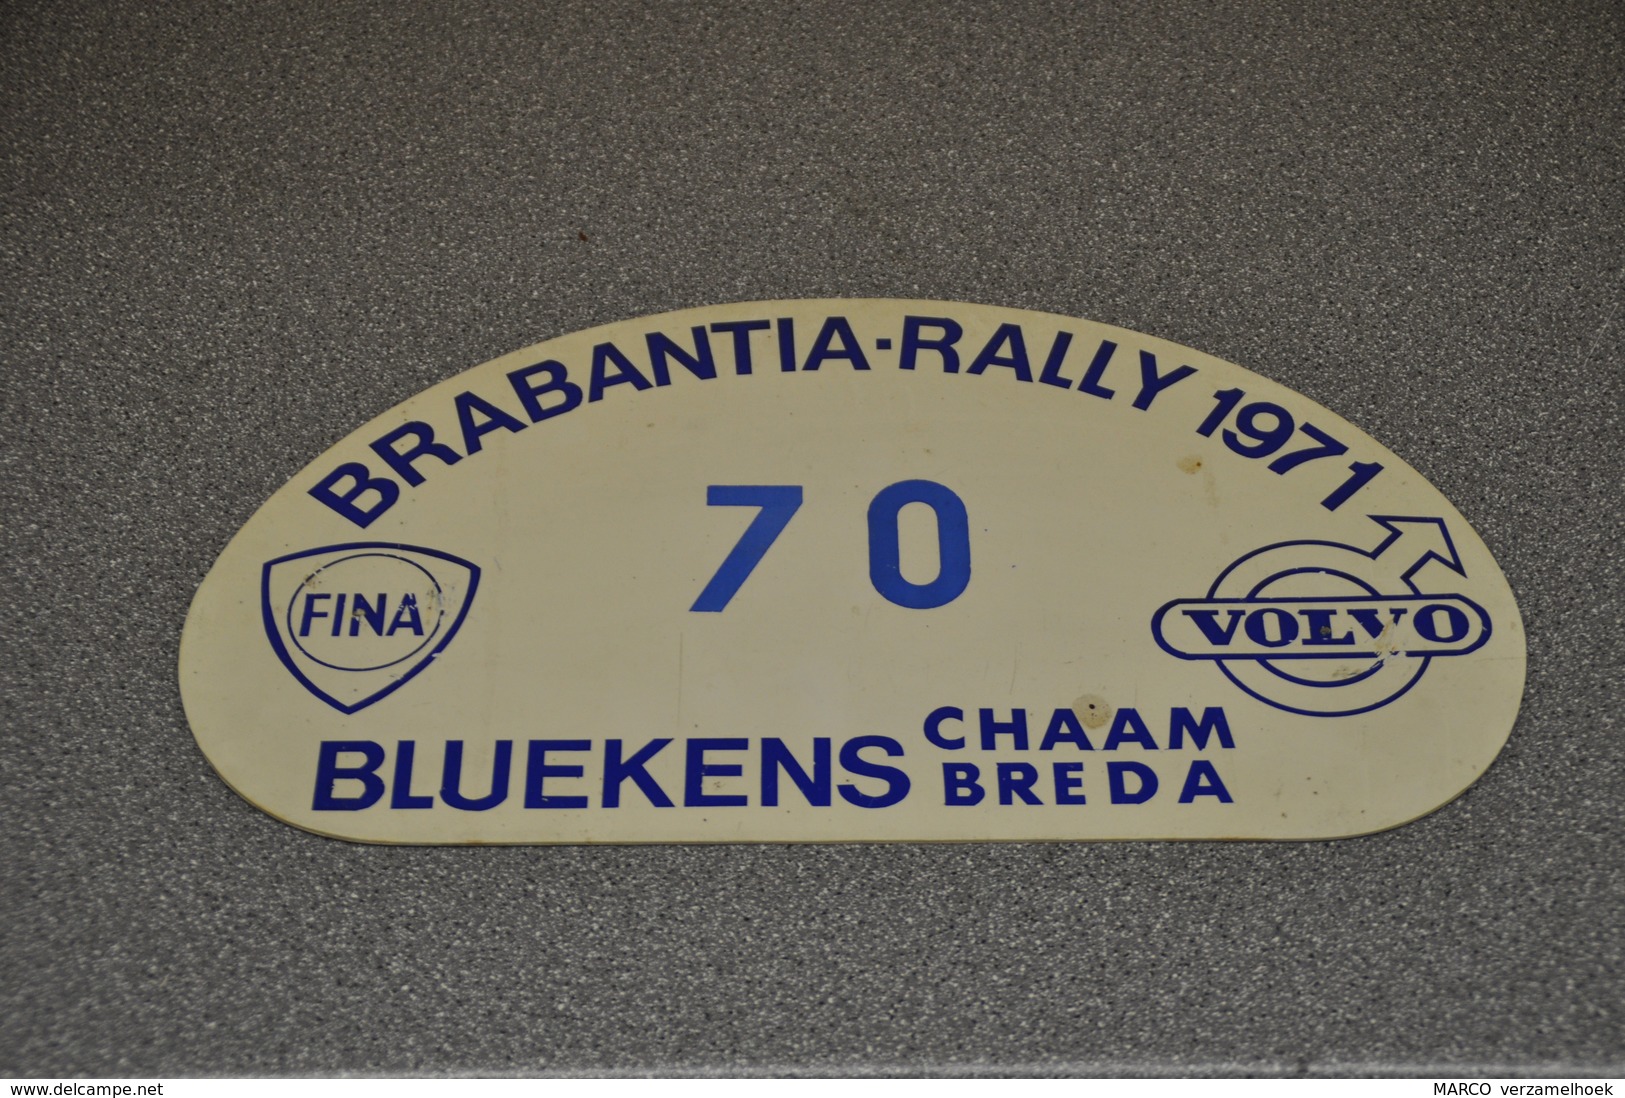 Rally Plaat-rallye Plaque Plastic: Brabantia Rally 1971 Bluekens Chaam-breda Volvo Fina - Plaques De Rallye